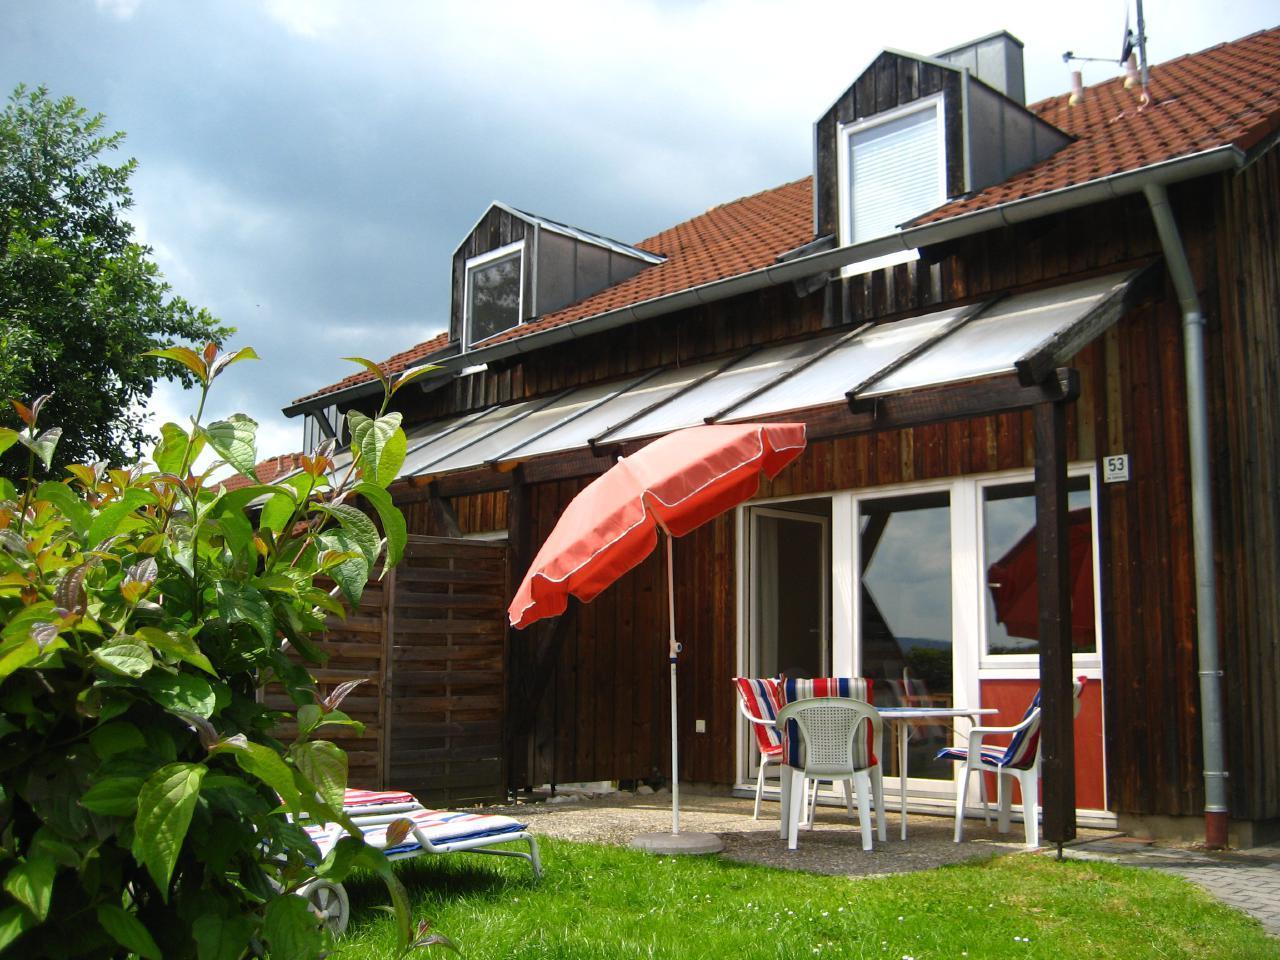 Ferienhaus in Zandt mit Grill, Garten und Terrasse  